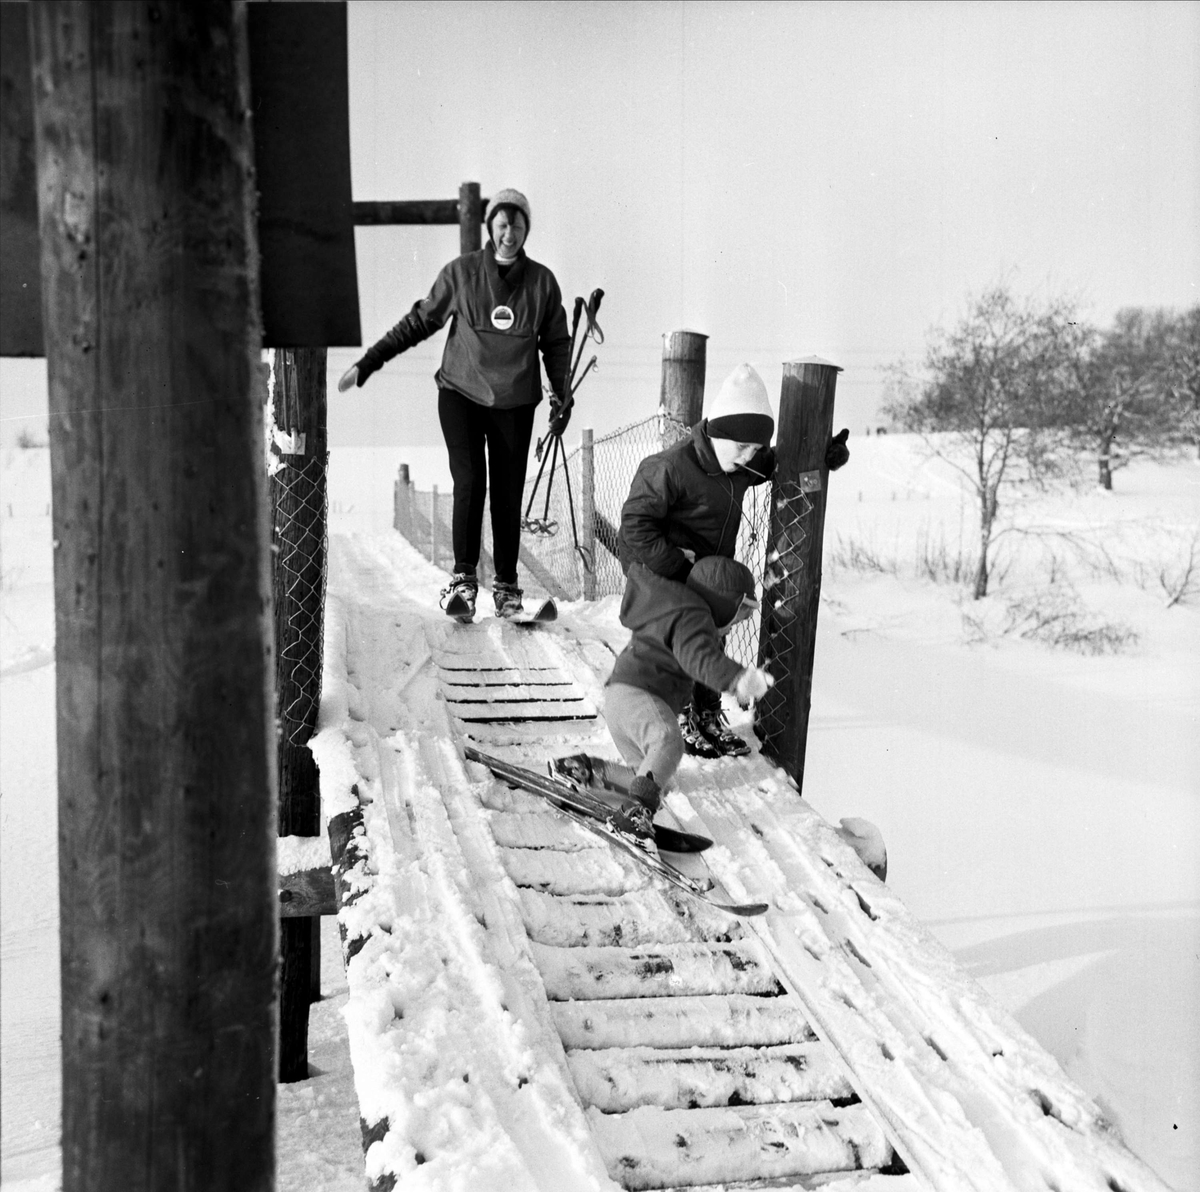 Skidåkare i Torslundabacken, Tierp, Uppland 1967